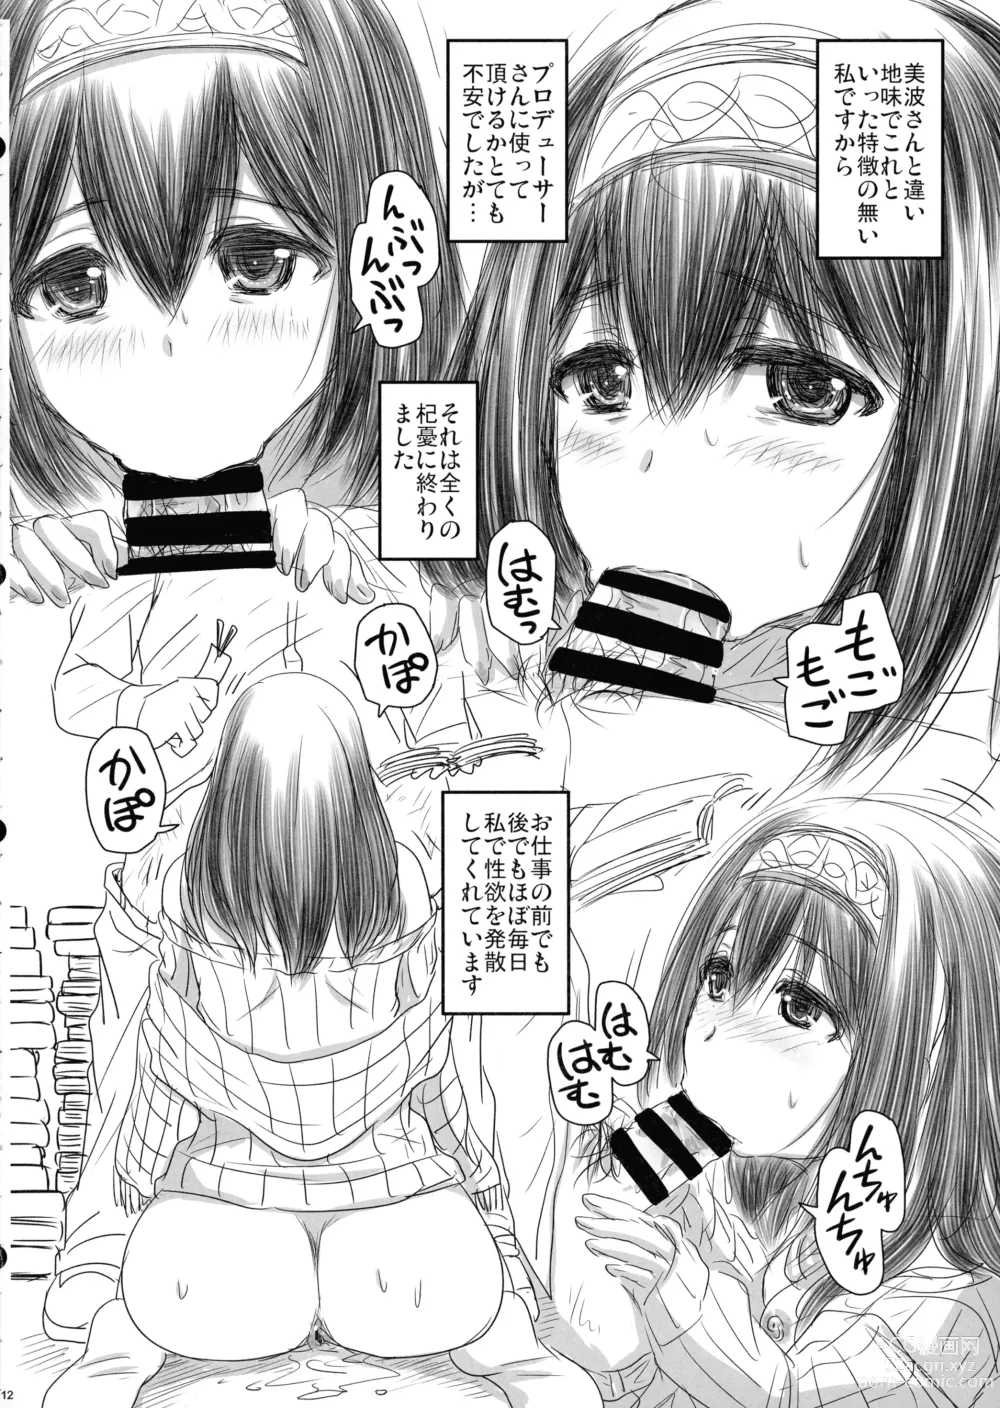 Page 12 of doujinshi Otsukare no P-san no Tame ni Yokare to Omotte Watashitachi ha…